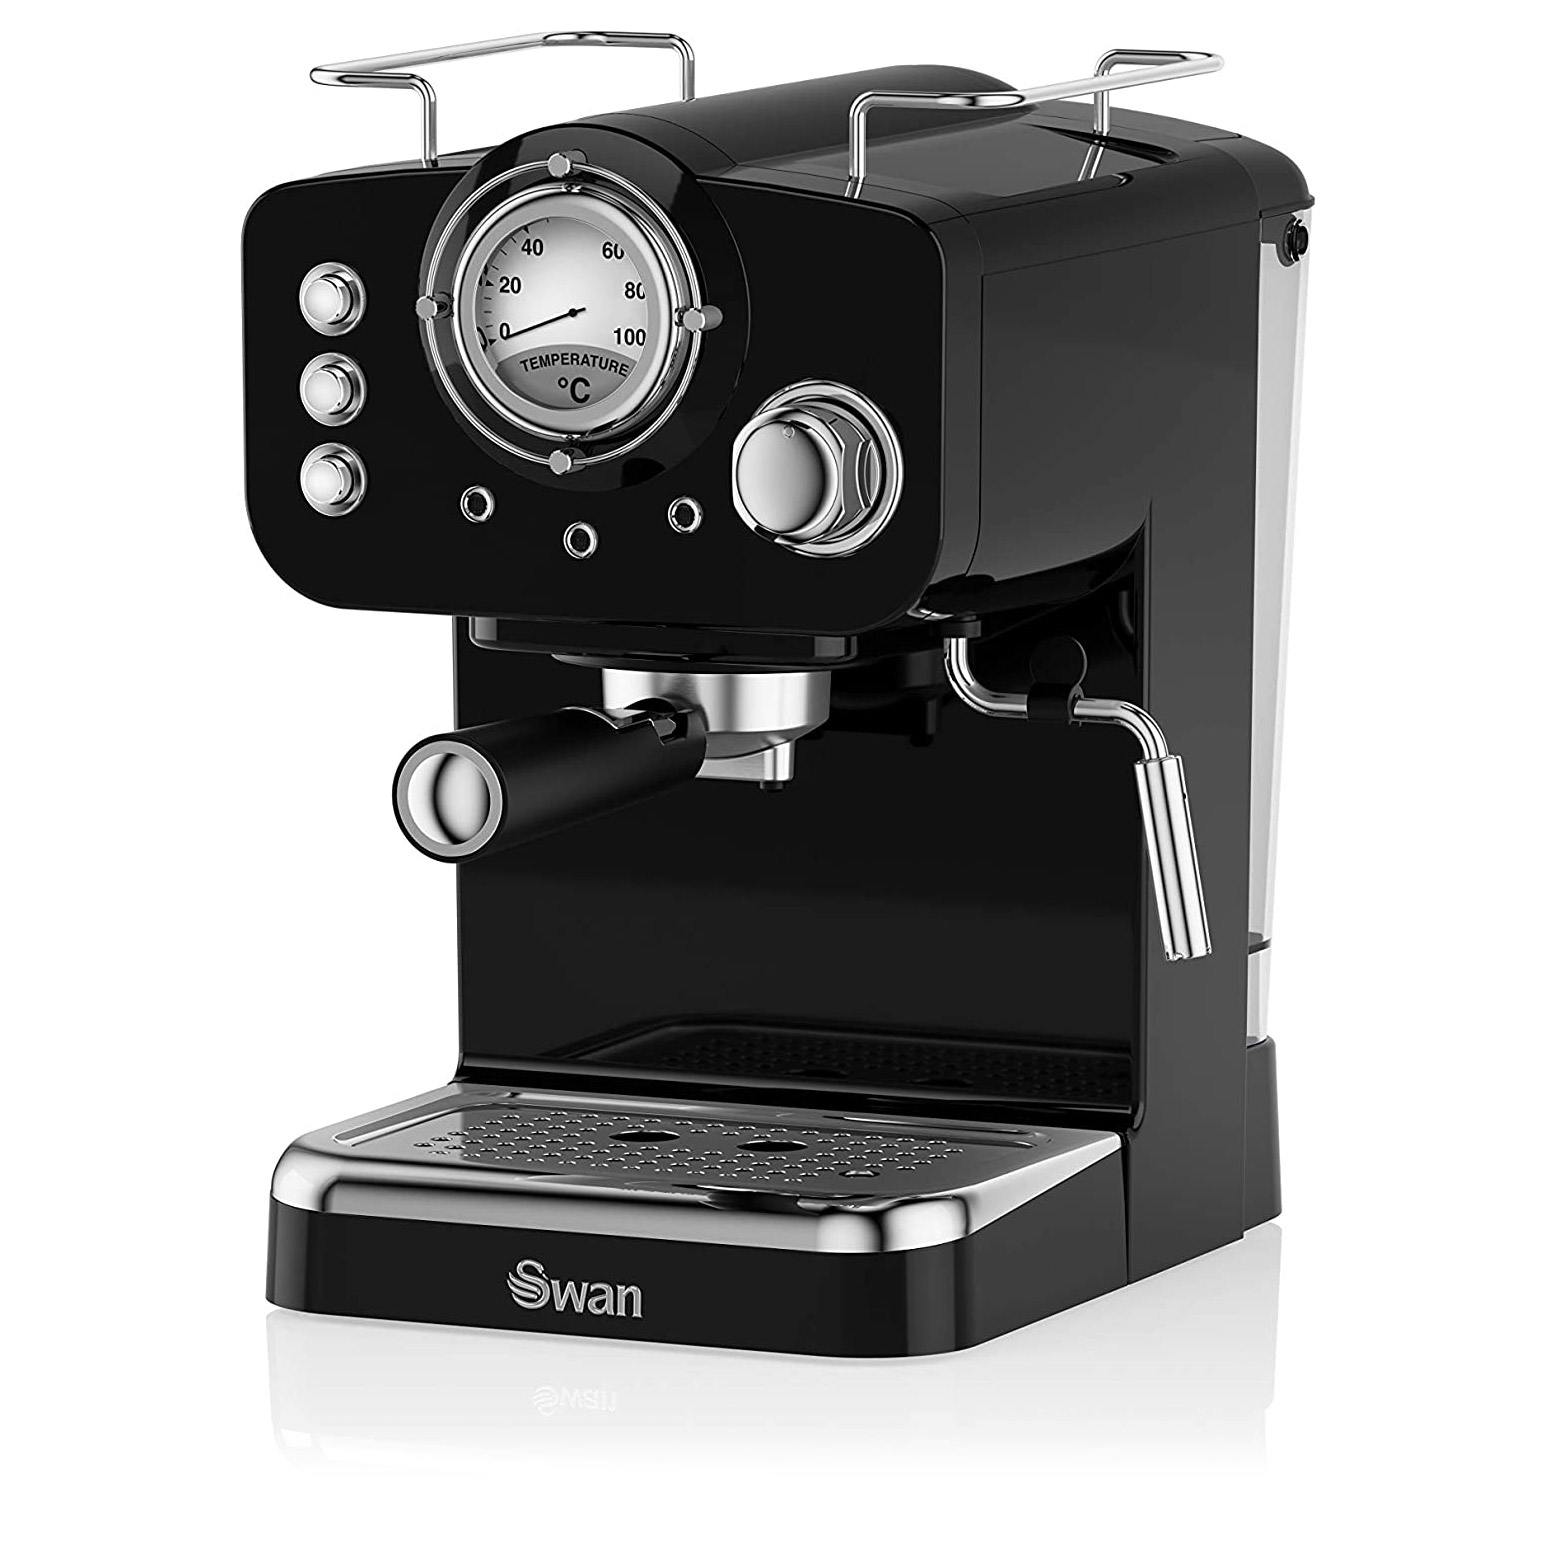 Swan SK22110BN Retro Pump Espresso Coffee Machine in Black - 15 Bars